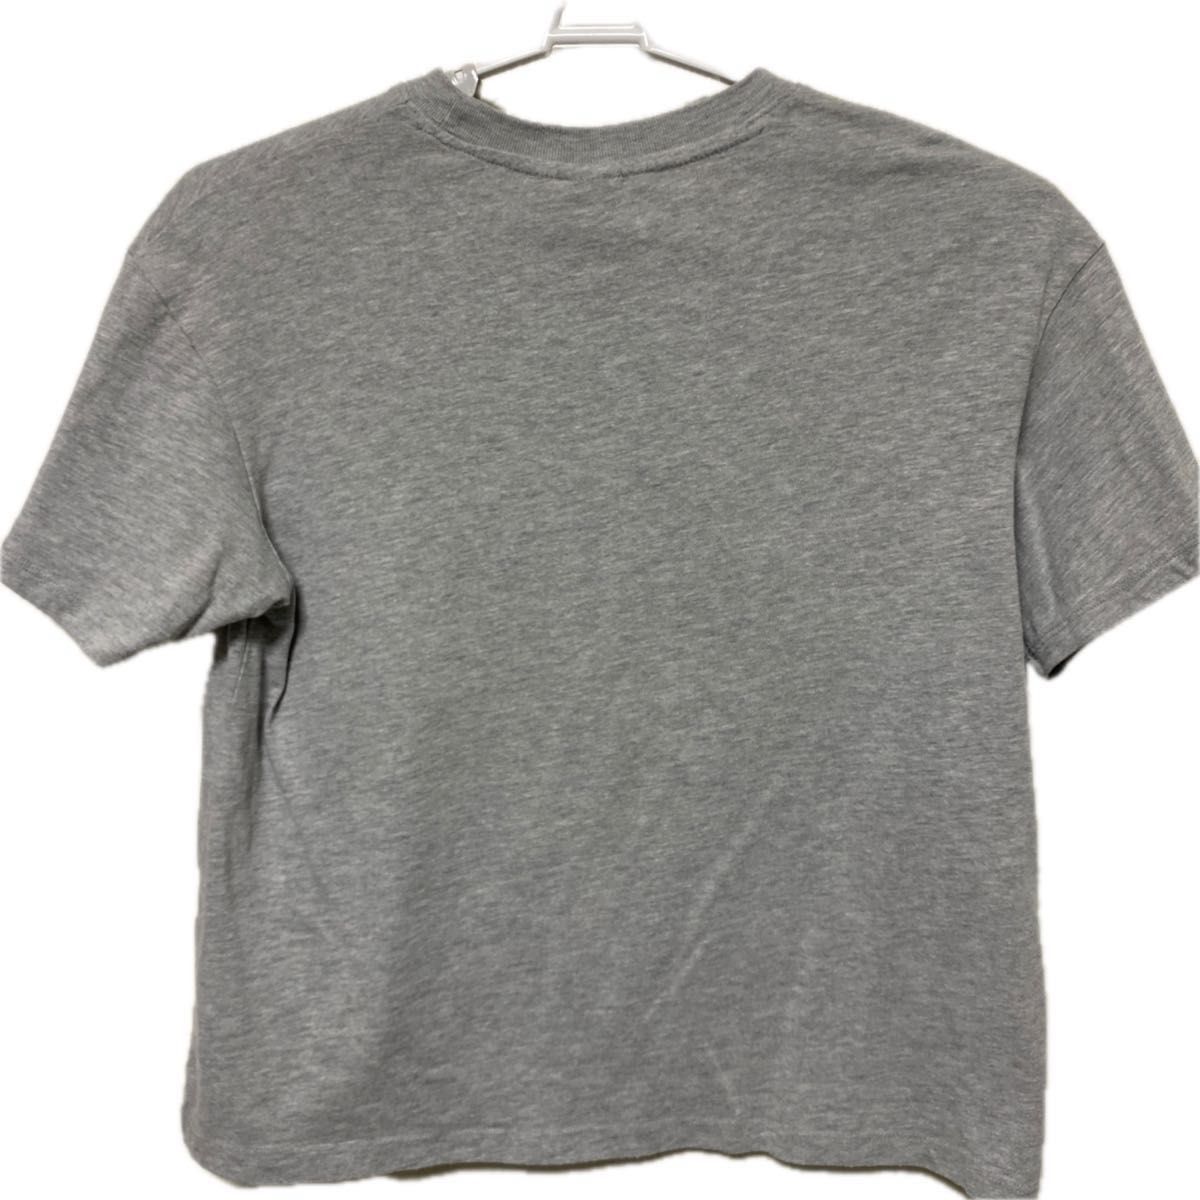 H&M Disney 半袖Tシャツ Sサイズ(USA) グレー ドナルドダック